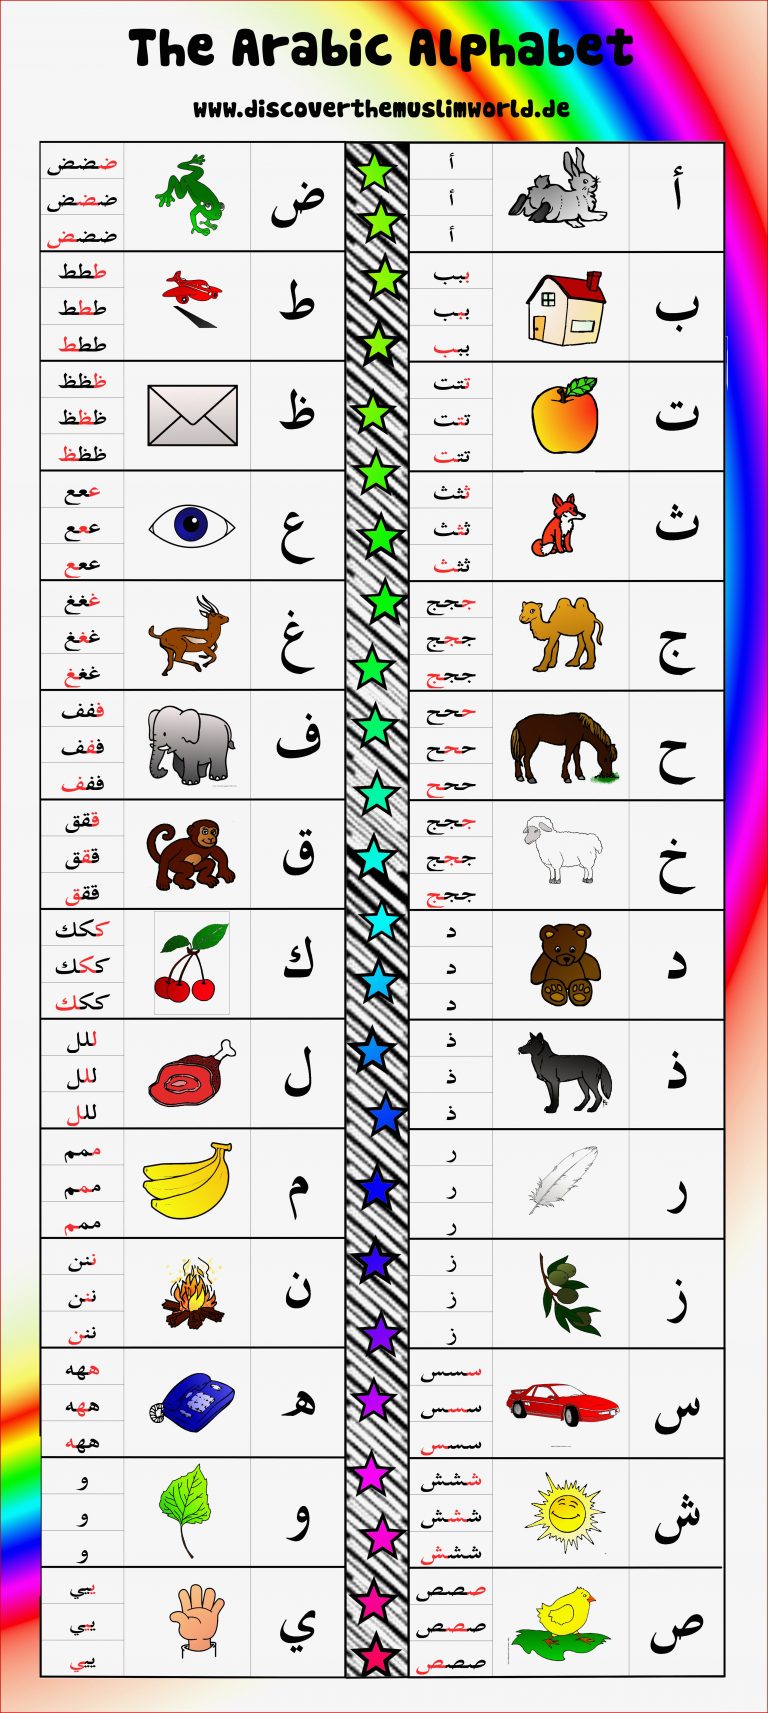 Arabic alphabet COLOR EN